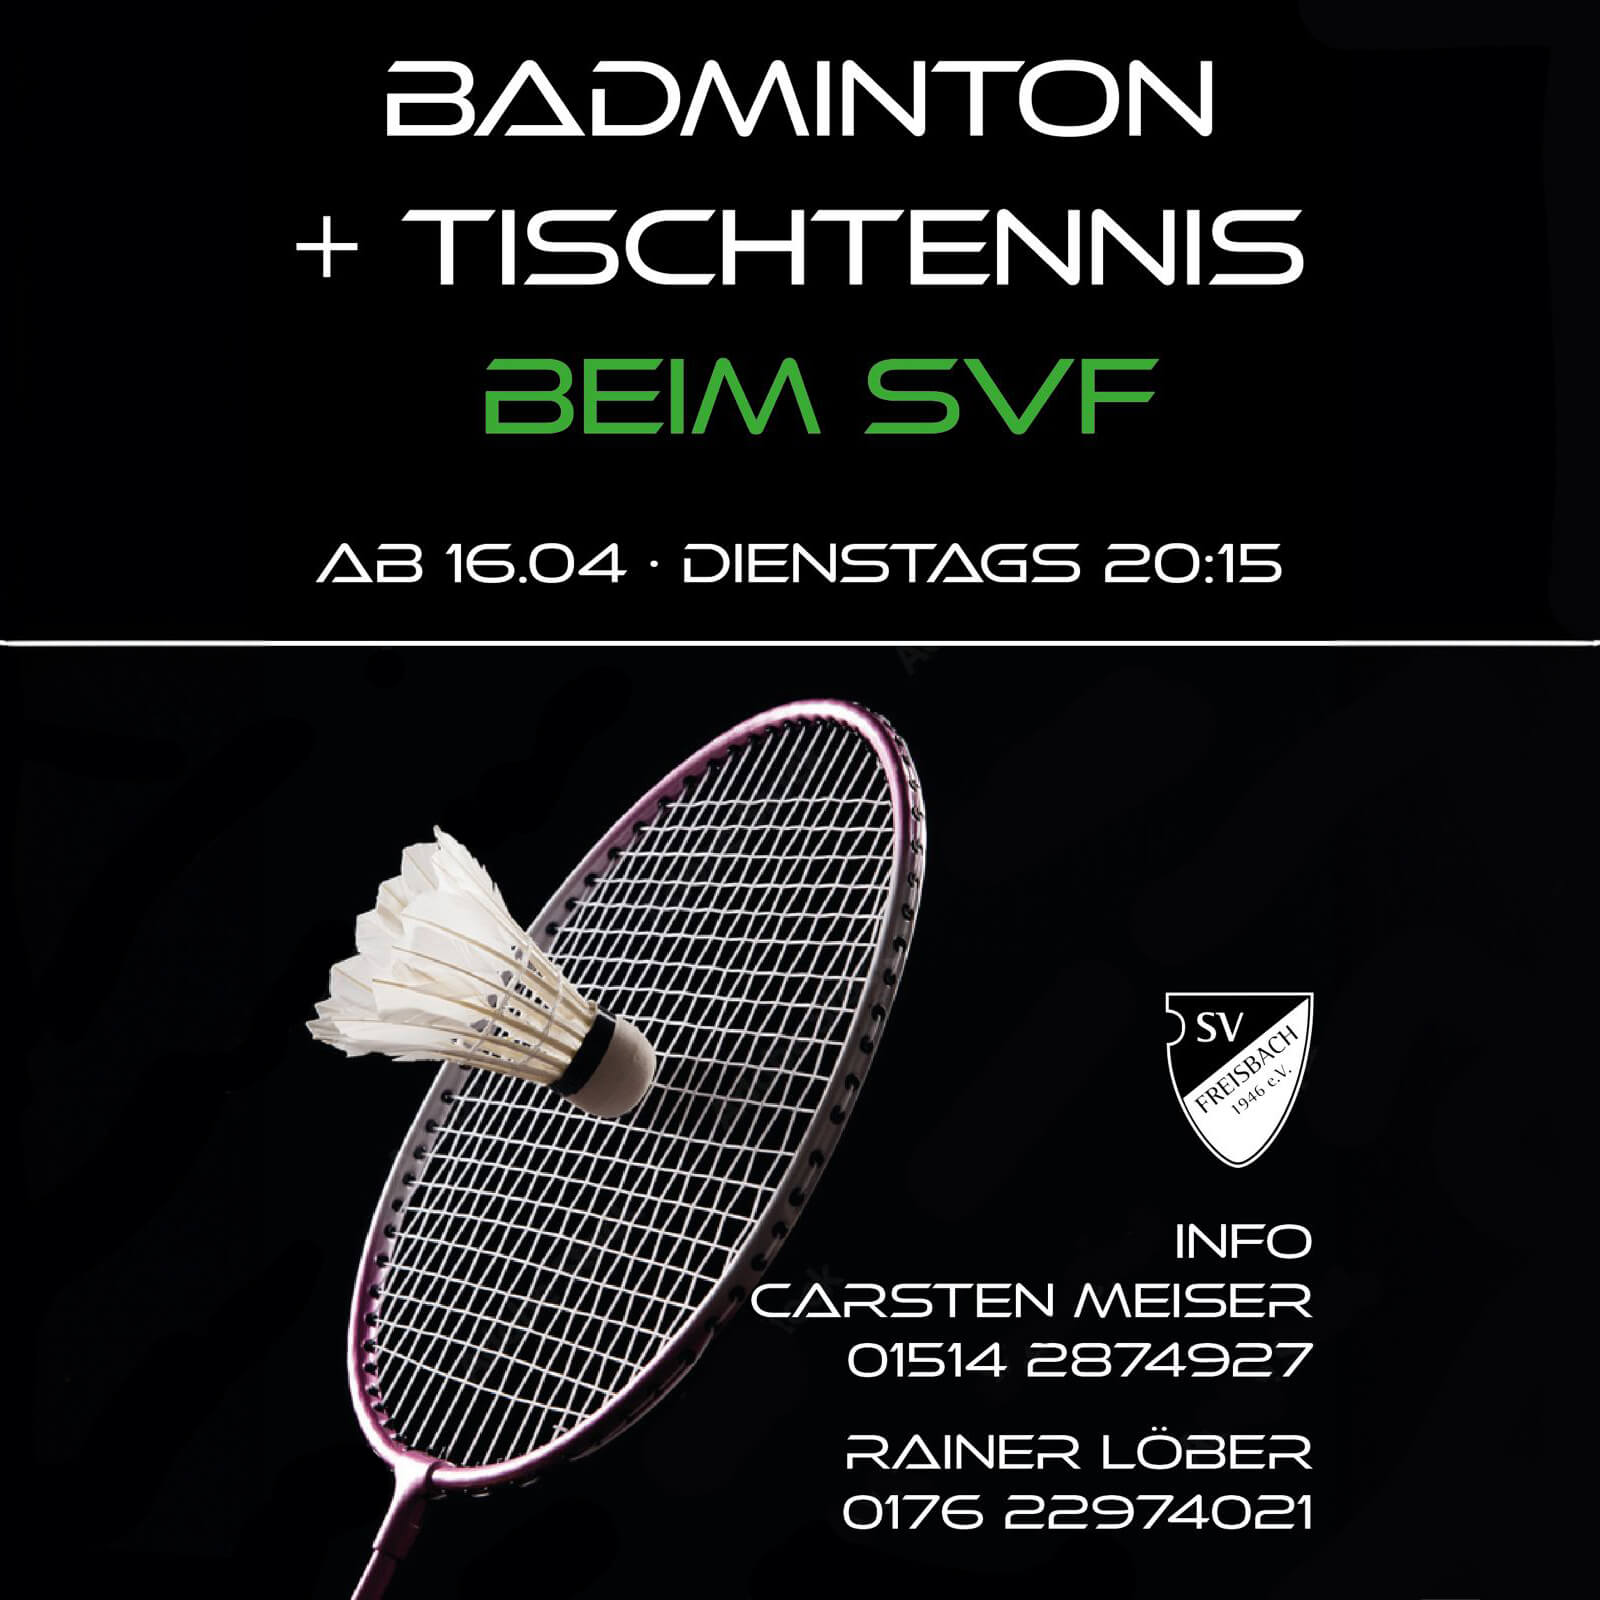 Tischtennis- und Badminton